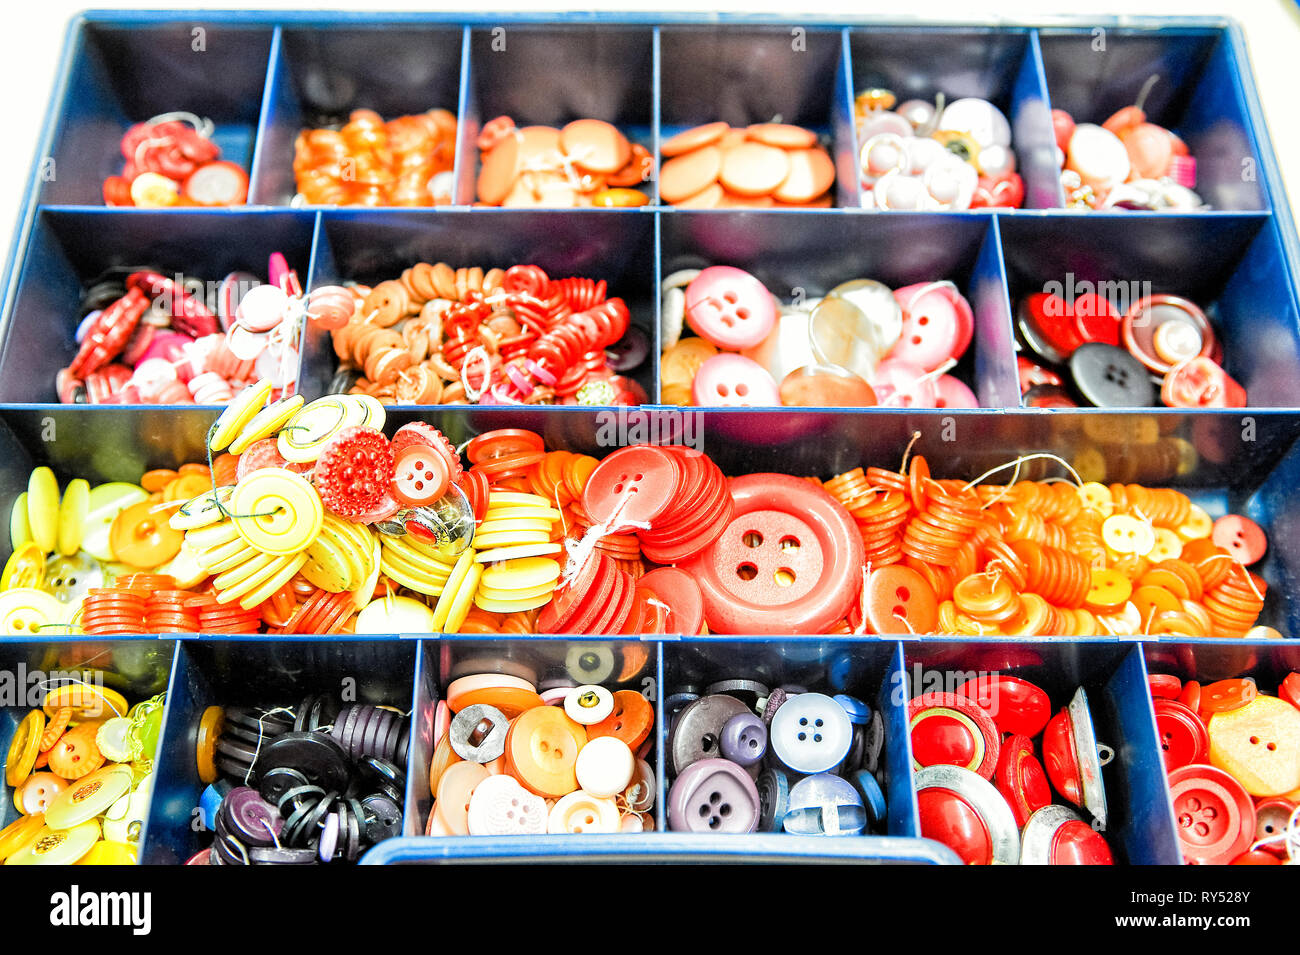 Ein Sortierkasten mit unterschiedlichen Knoepfen nach Farben sortiert. Foto Stock